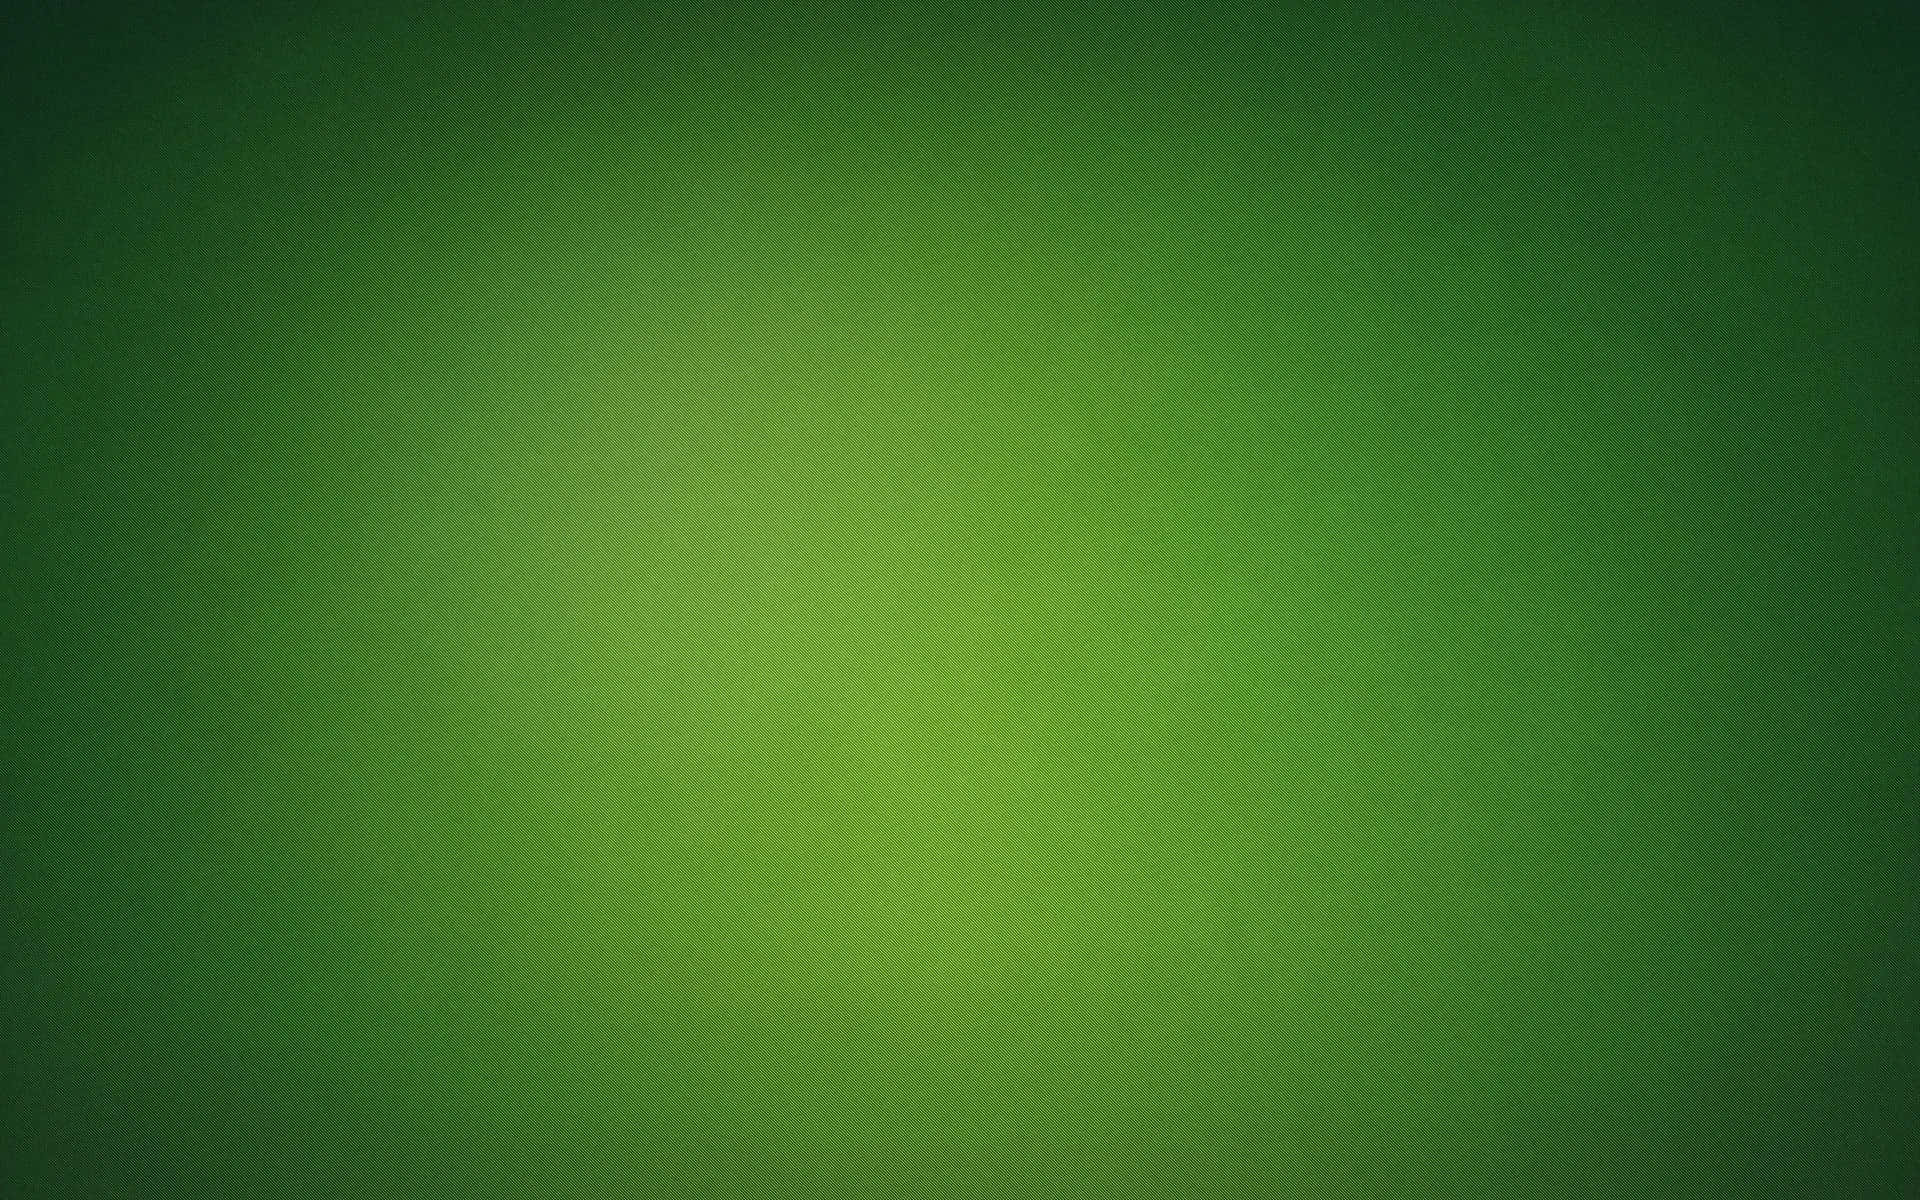 Dark To Light Green Background